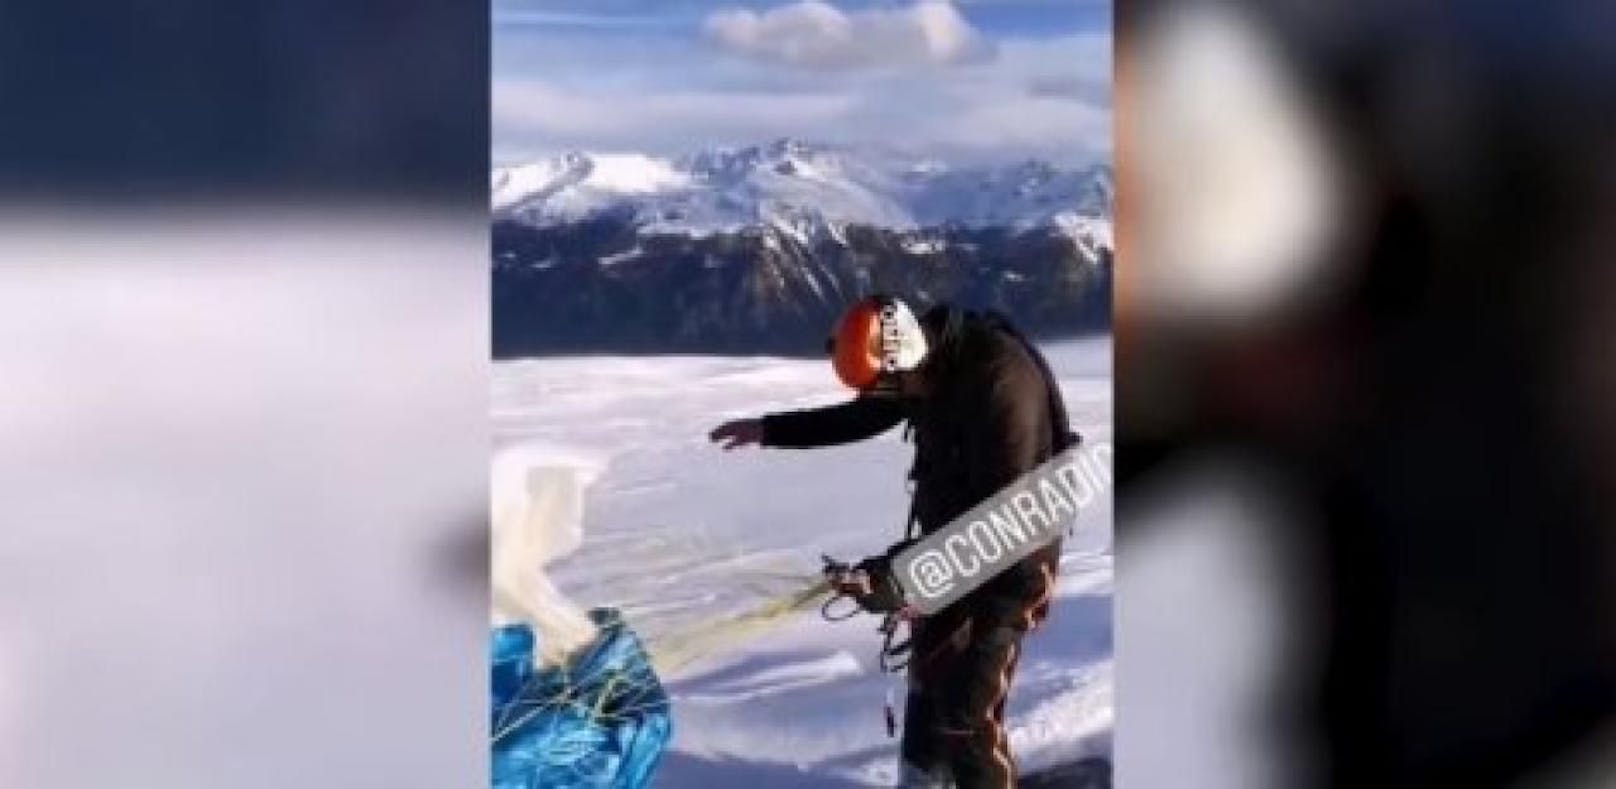 2 Tage vor Tod filmte sich Barandun beim Snowkiten